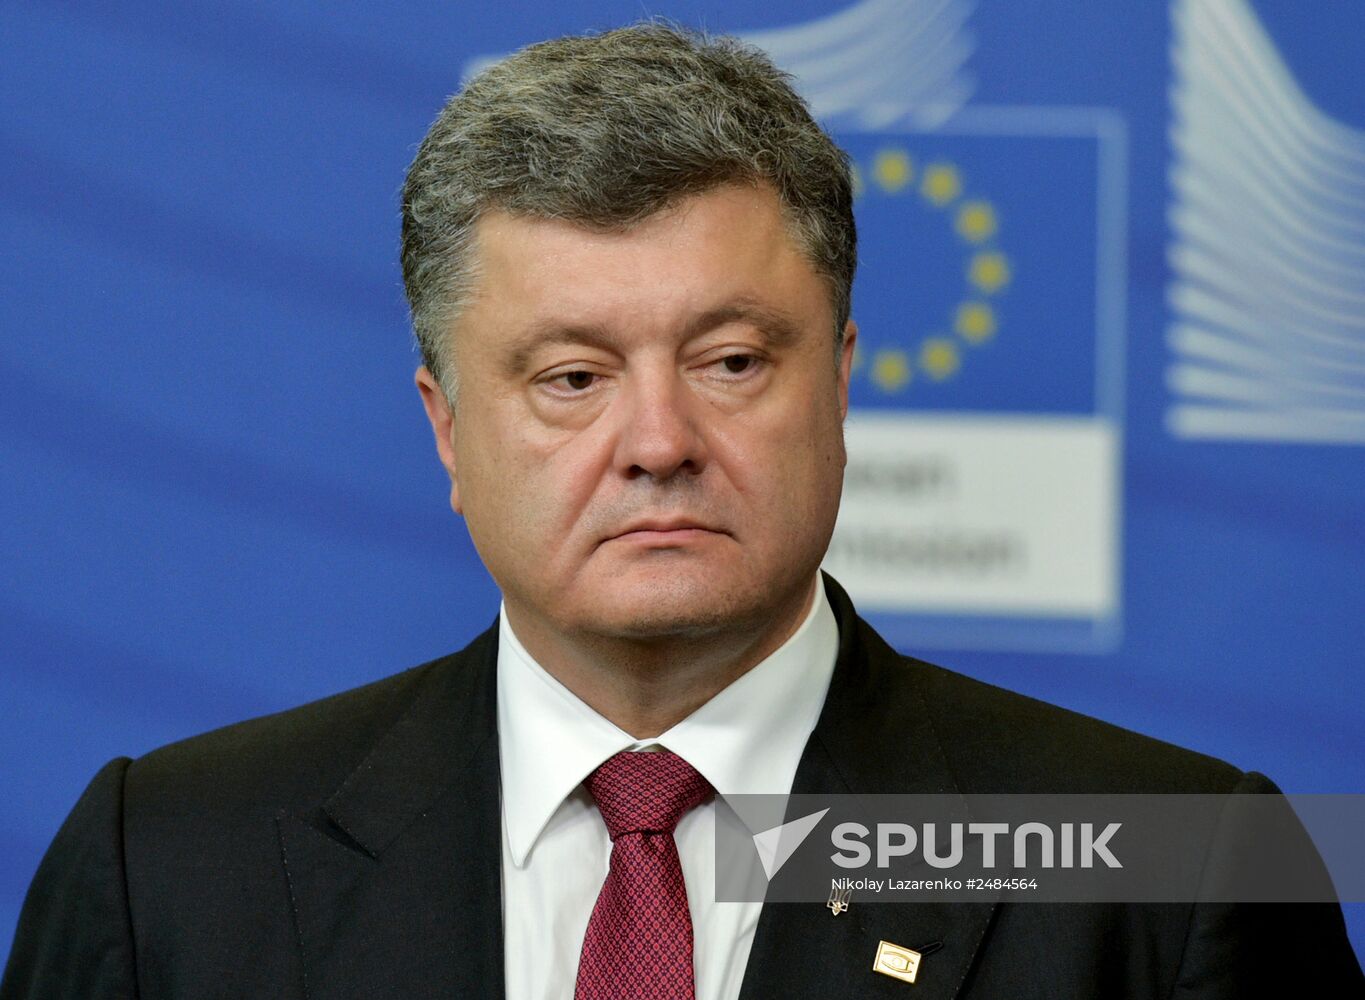 Ukrainian president Petro Poroshenko visits Brussels